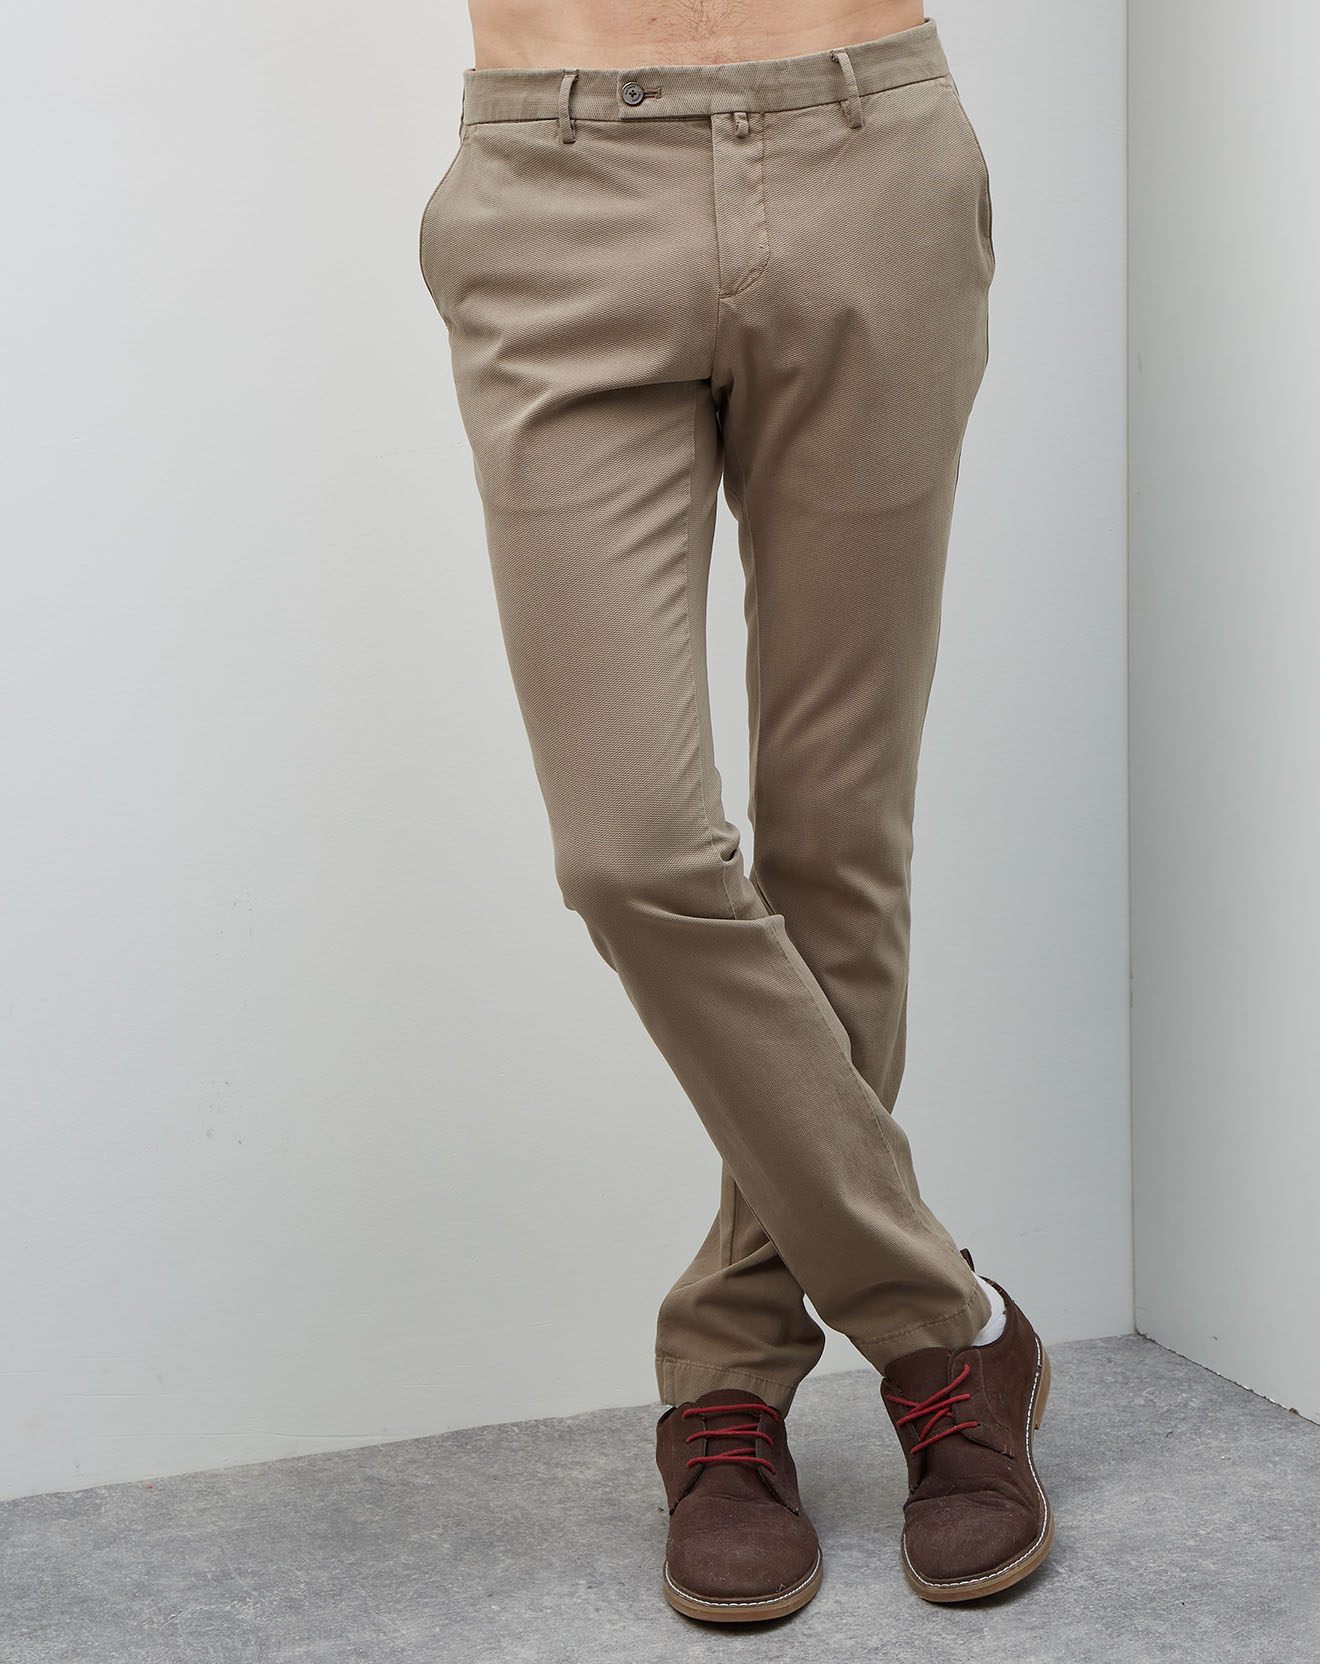 Pantalon Gmt dye texture taupe